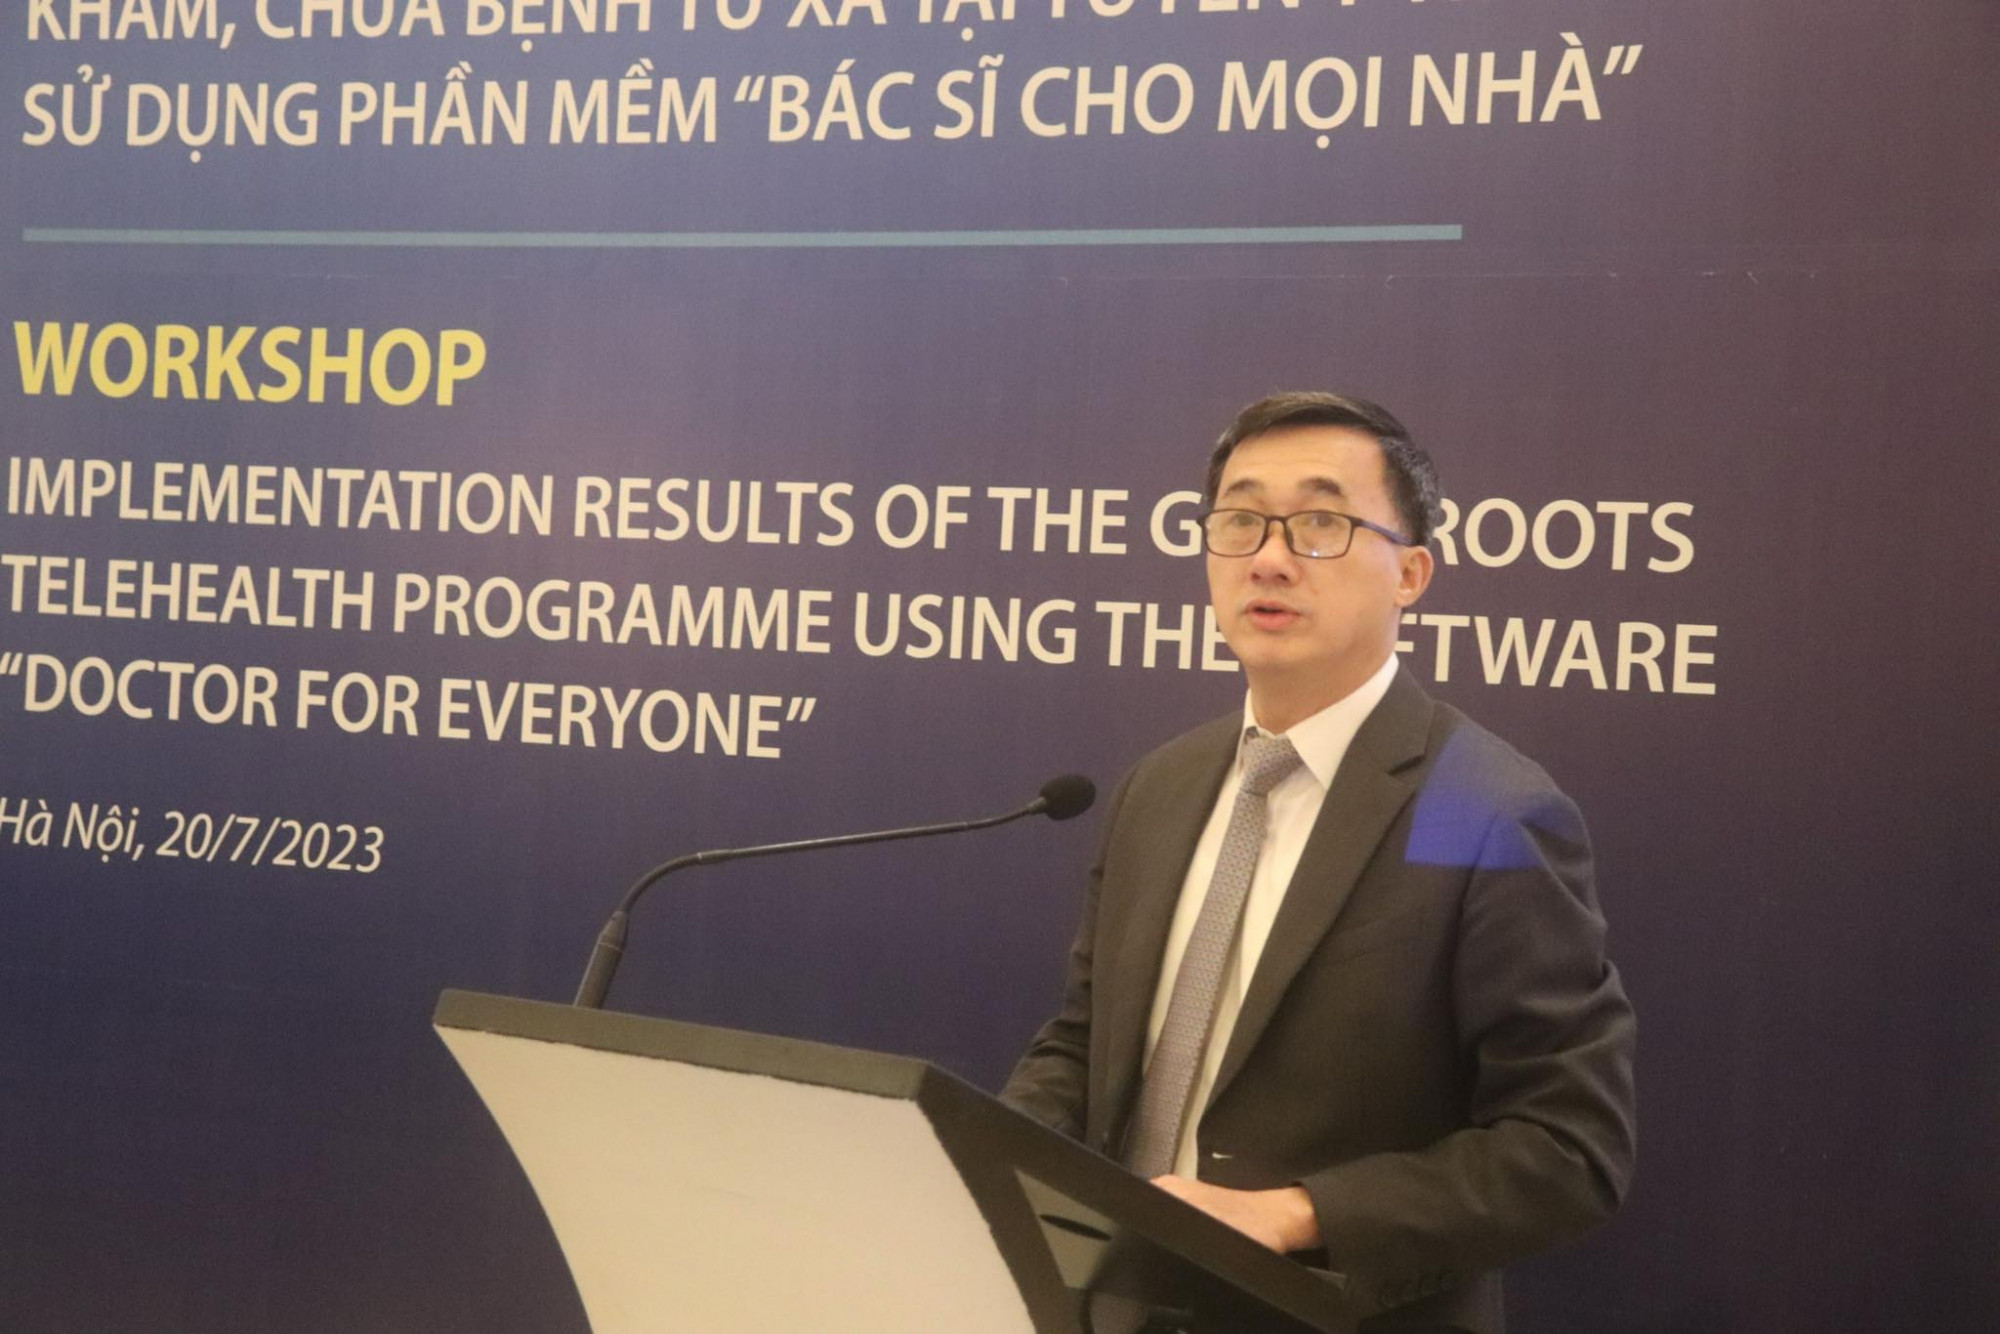 Thứ trưởng Bộ Y tế Trần Văn Thuấn cho biết sẽ sớm có quy định cụ thể để triển khai khám chữa bệnh từ xa hiệu quả, tạo điều kiện thuận lợi cả cho người dân cũng như người hành nghề